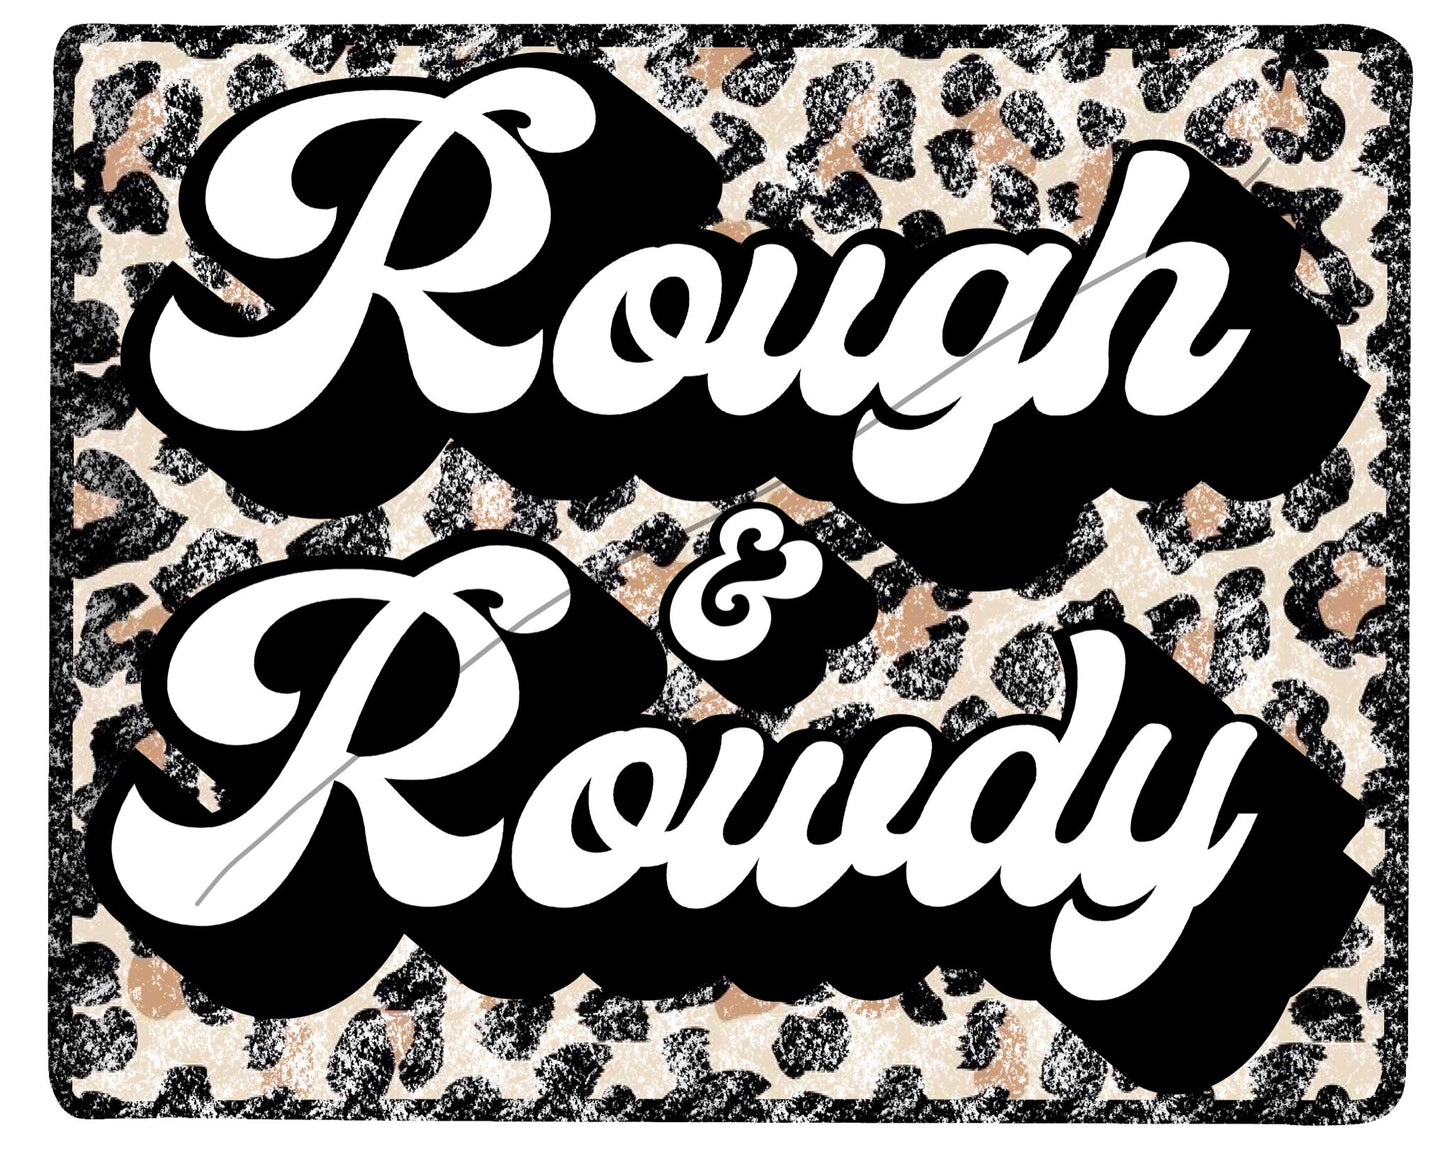 Rough & rowdy